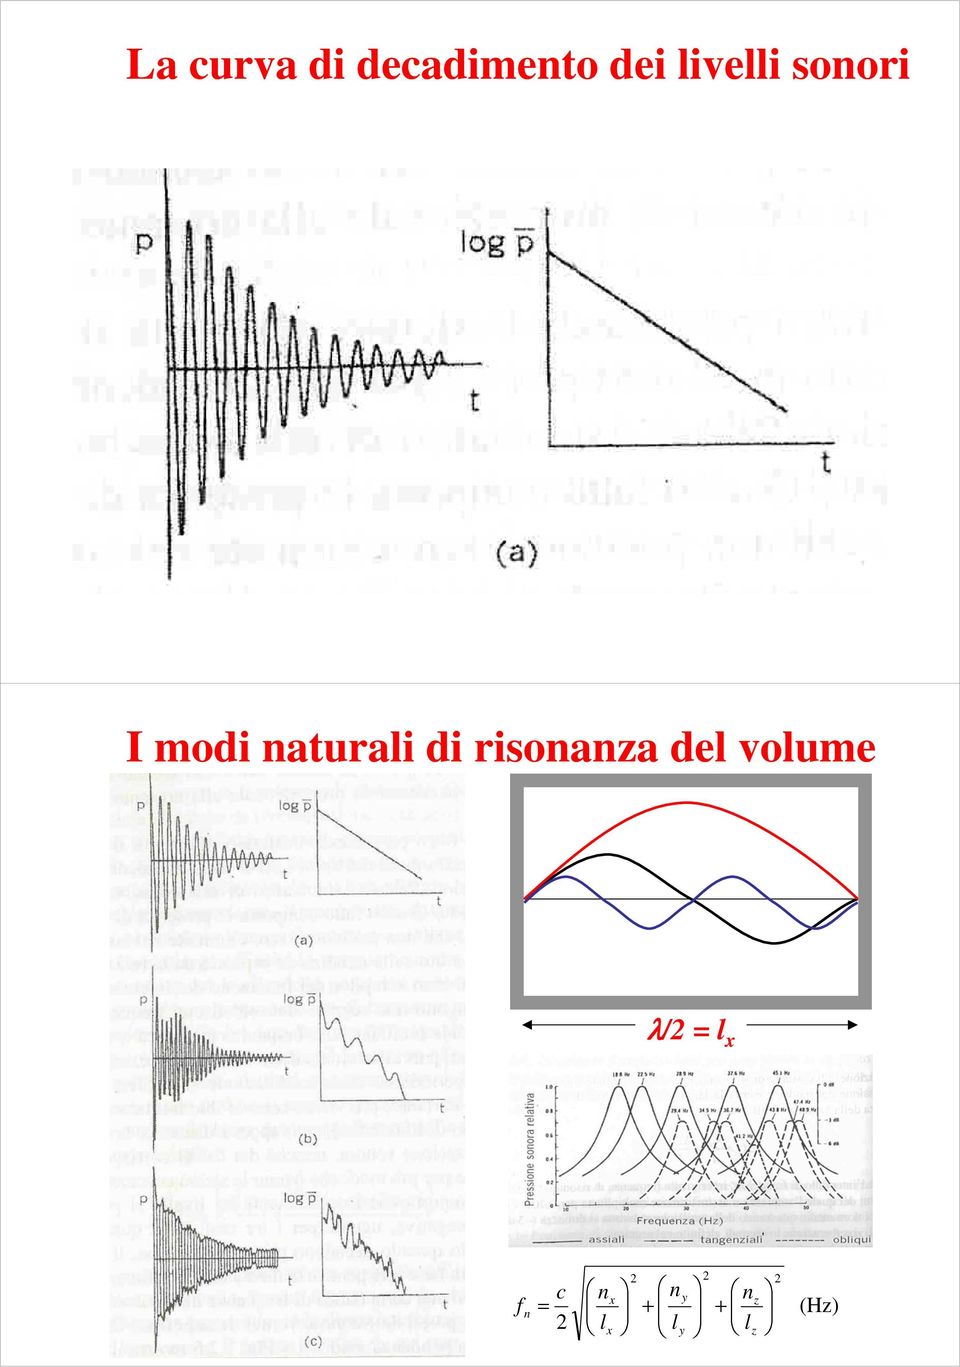 di risonanza del volume λ/ = l x